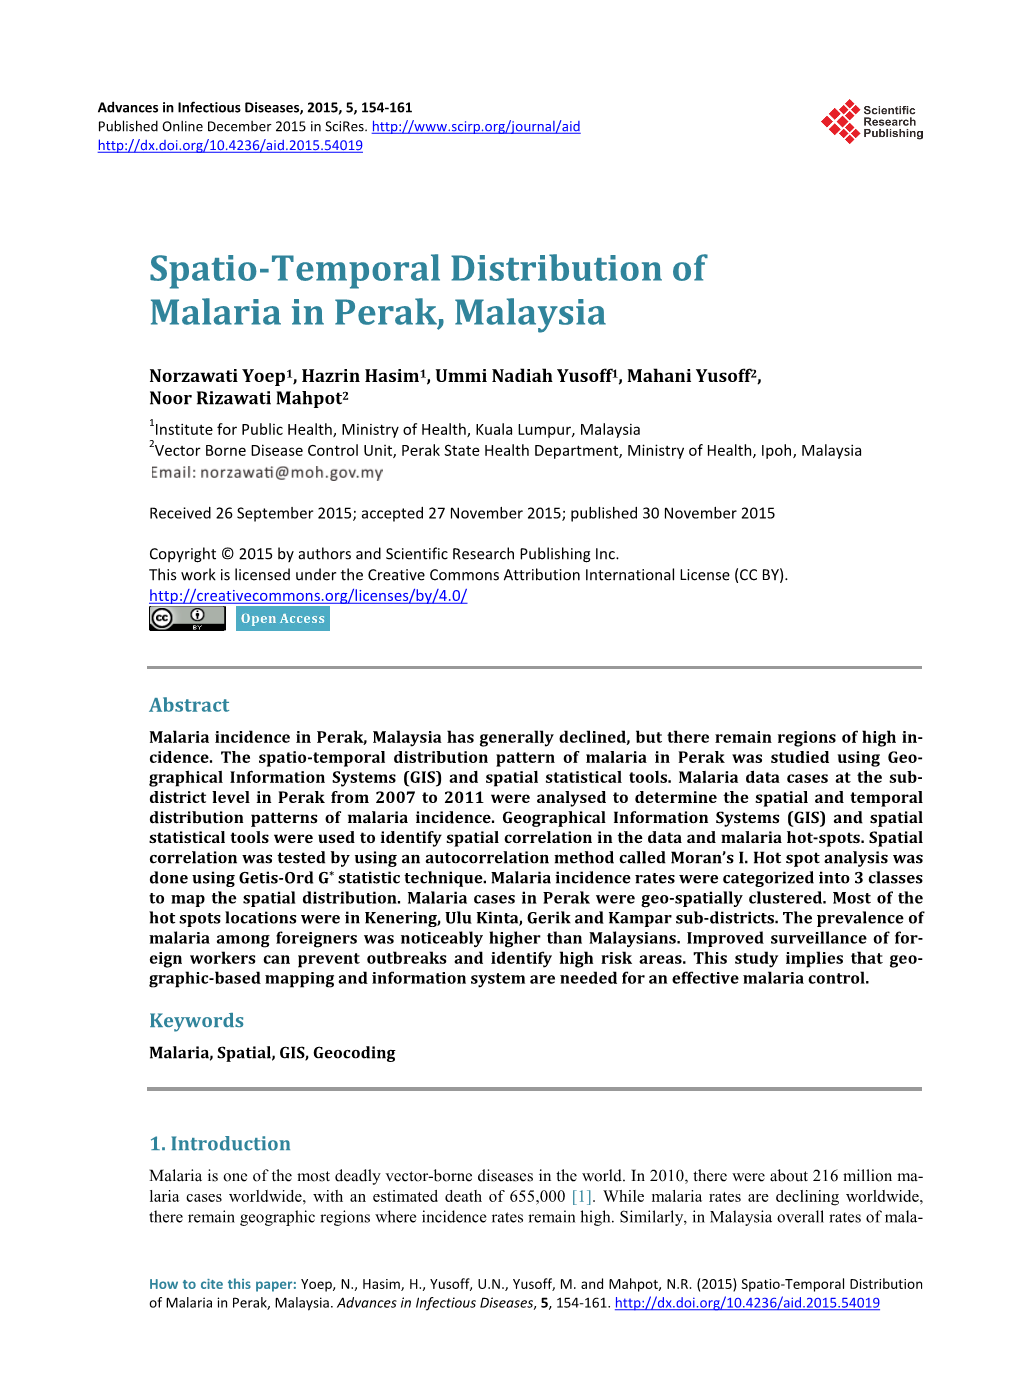 Spatio-Temporal Distribution of Malaria in Perak, Malaysia